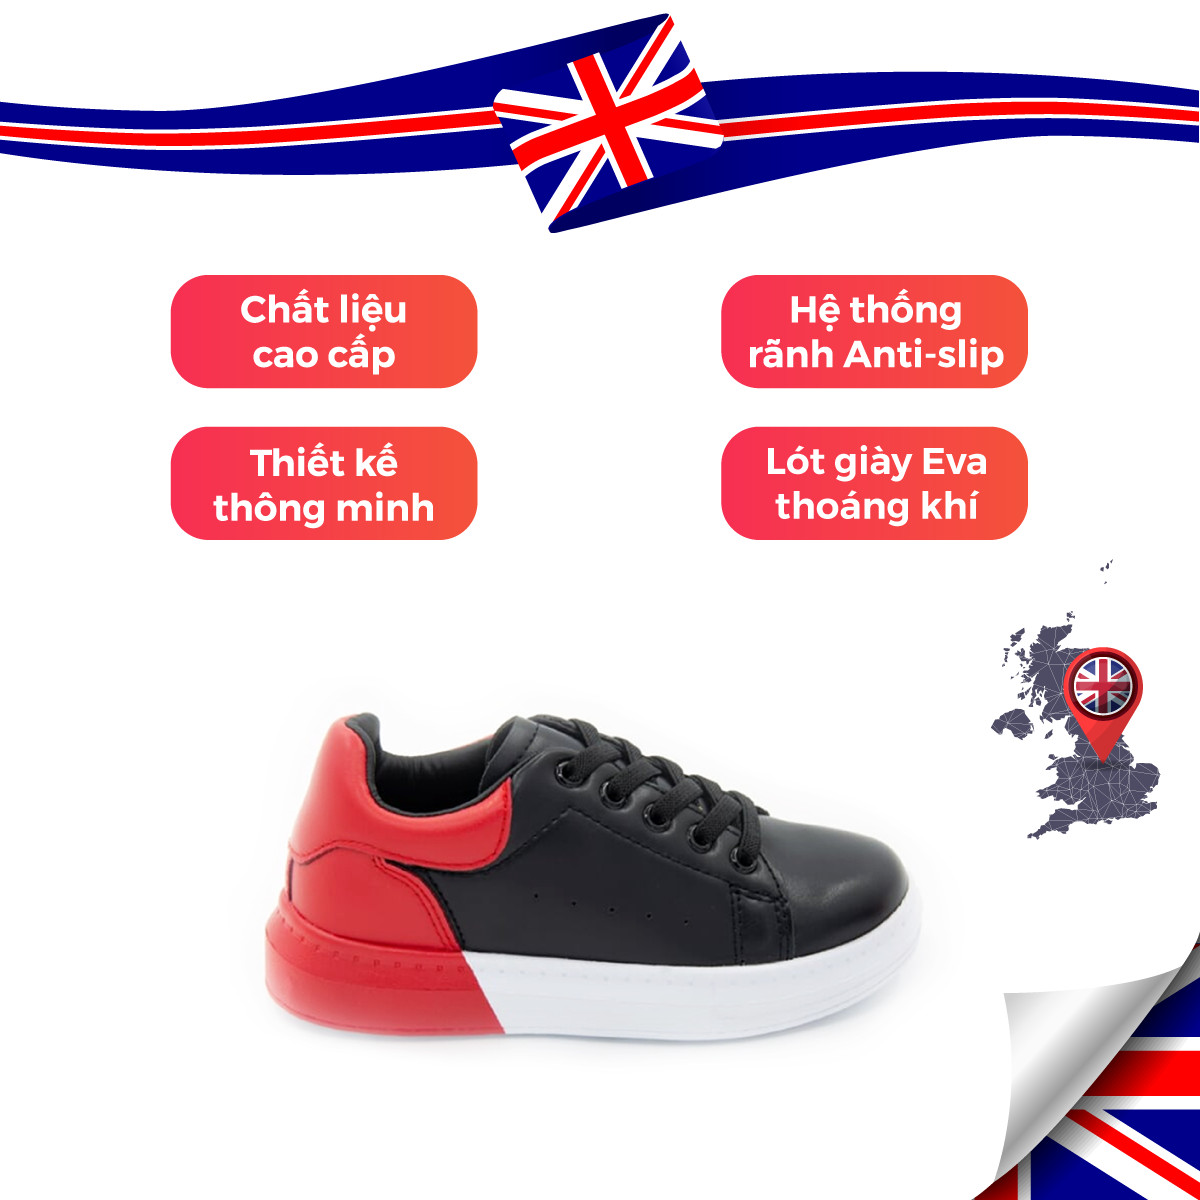 Giày Thể Thao Sneaker Bé Trai Bé Gái Đi Học Cổ Thấp Crown Space UK Active CRUK254 Cho Trẻ em Chất Liệu Cao Cấp  Siêu Nhẹ Êm Size 28-36/4-14 Tuổi